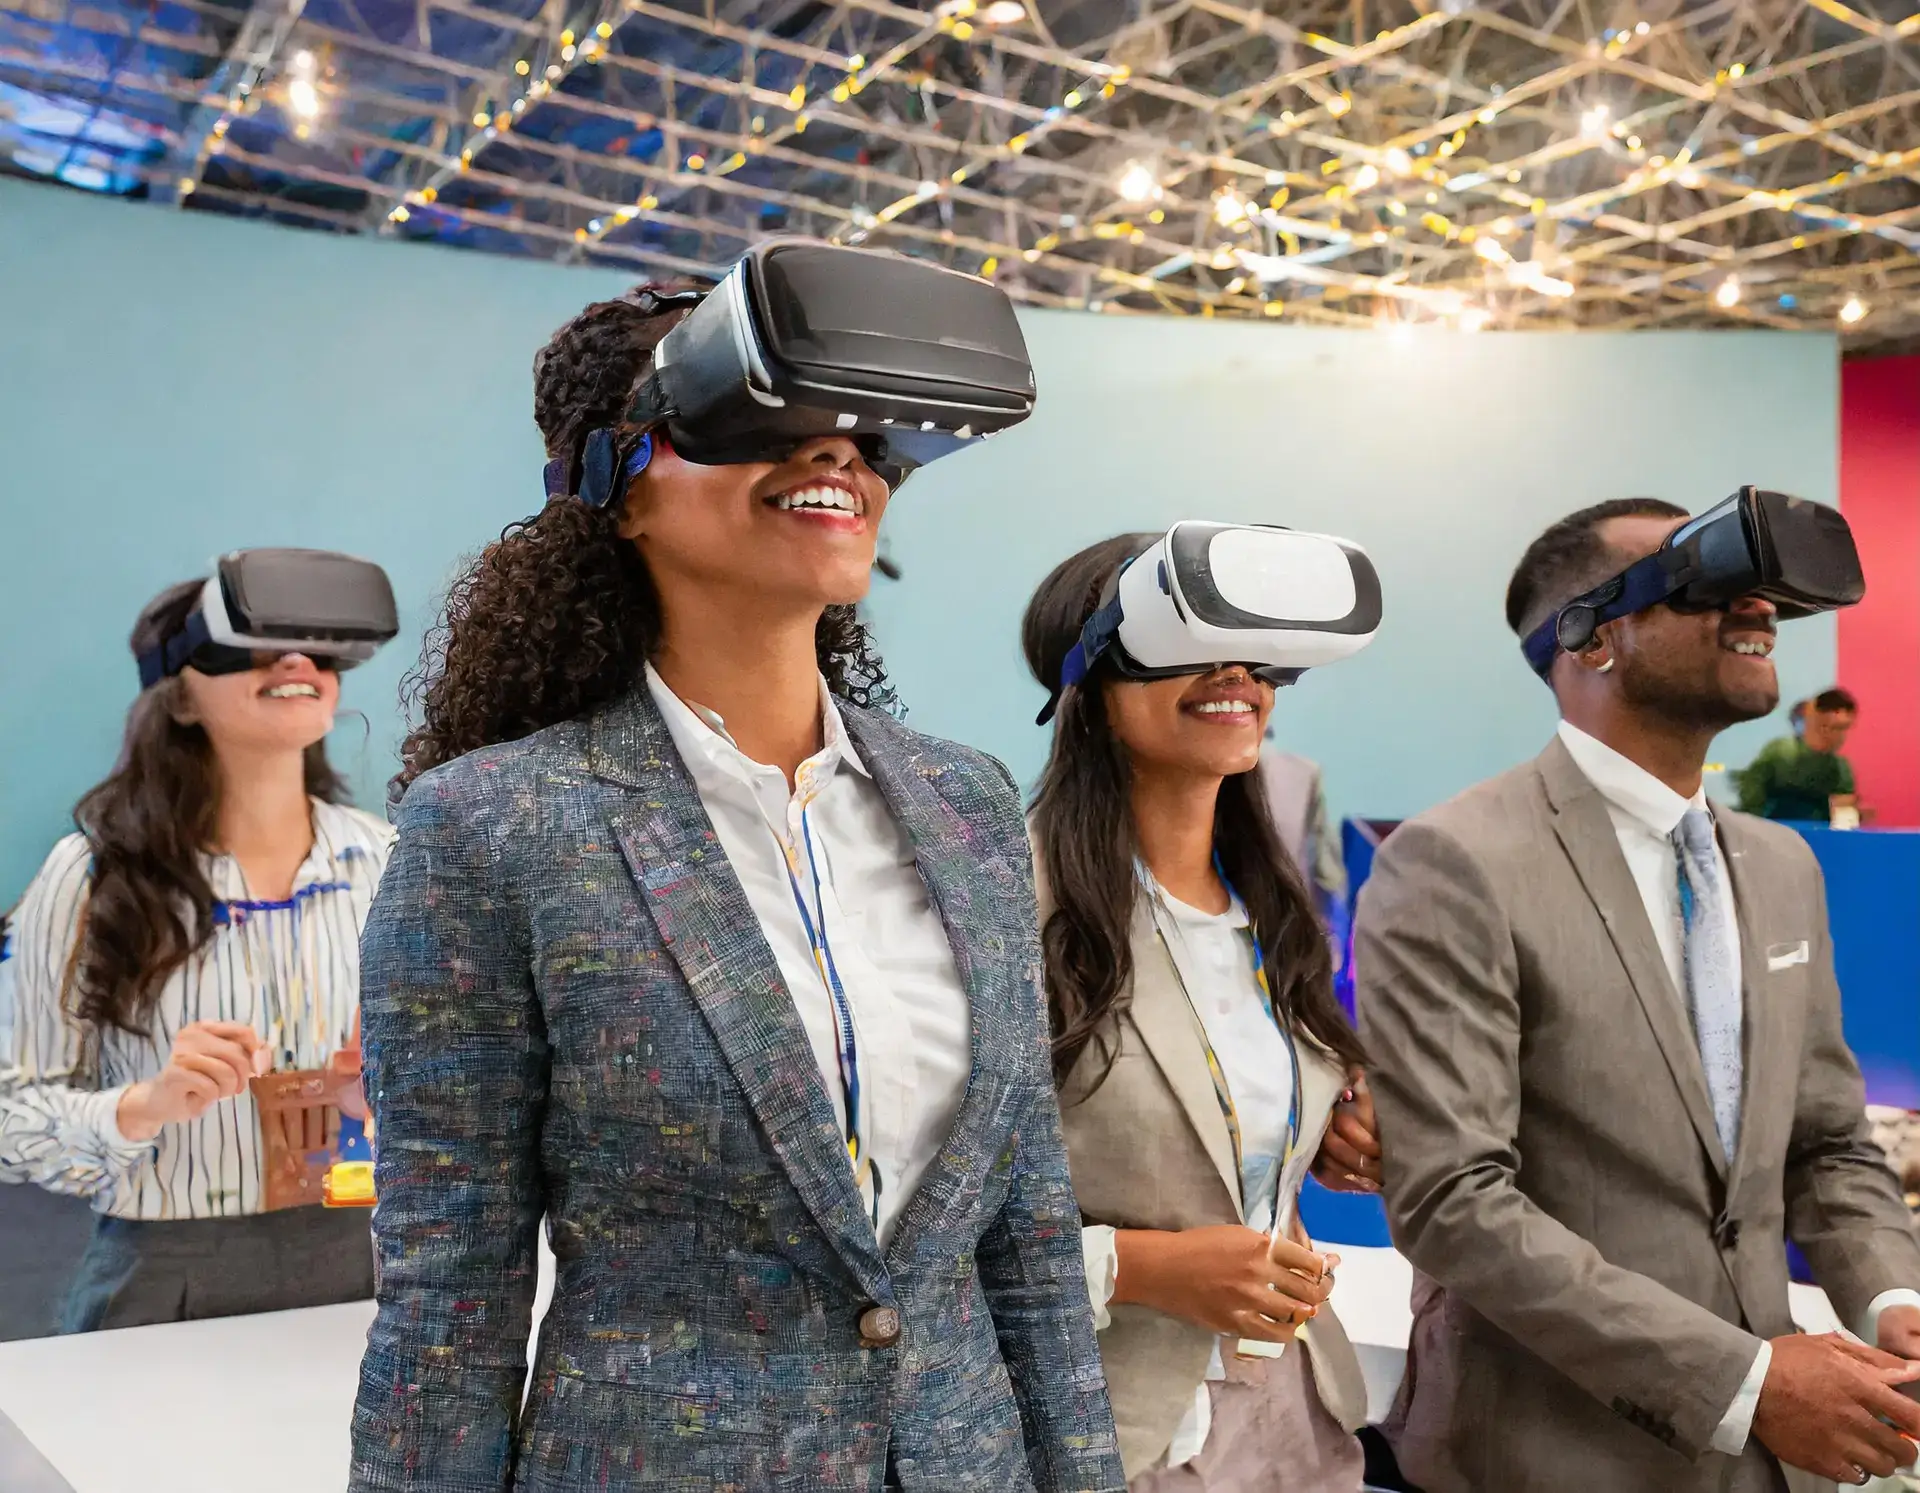 Asistentes a la convención mirando a través de gafas de realidad virtual.